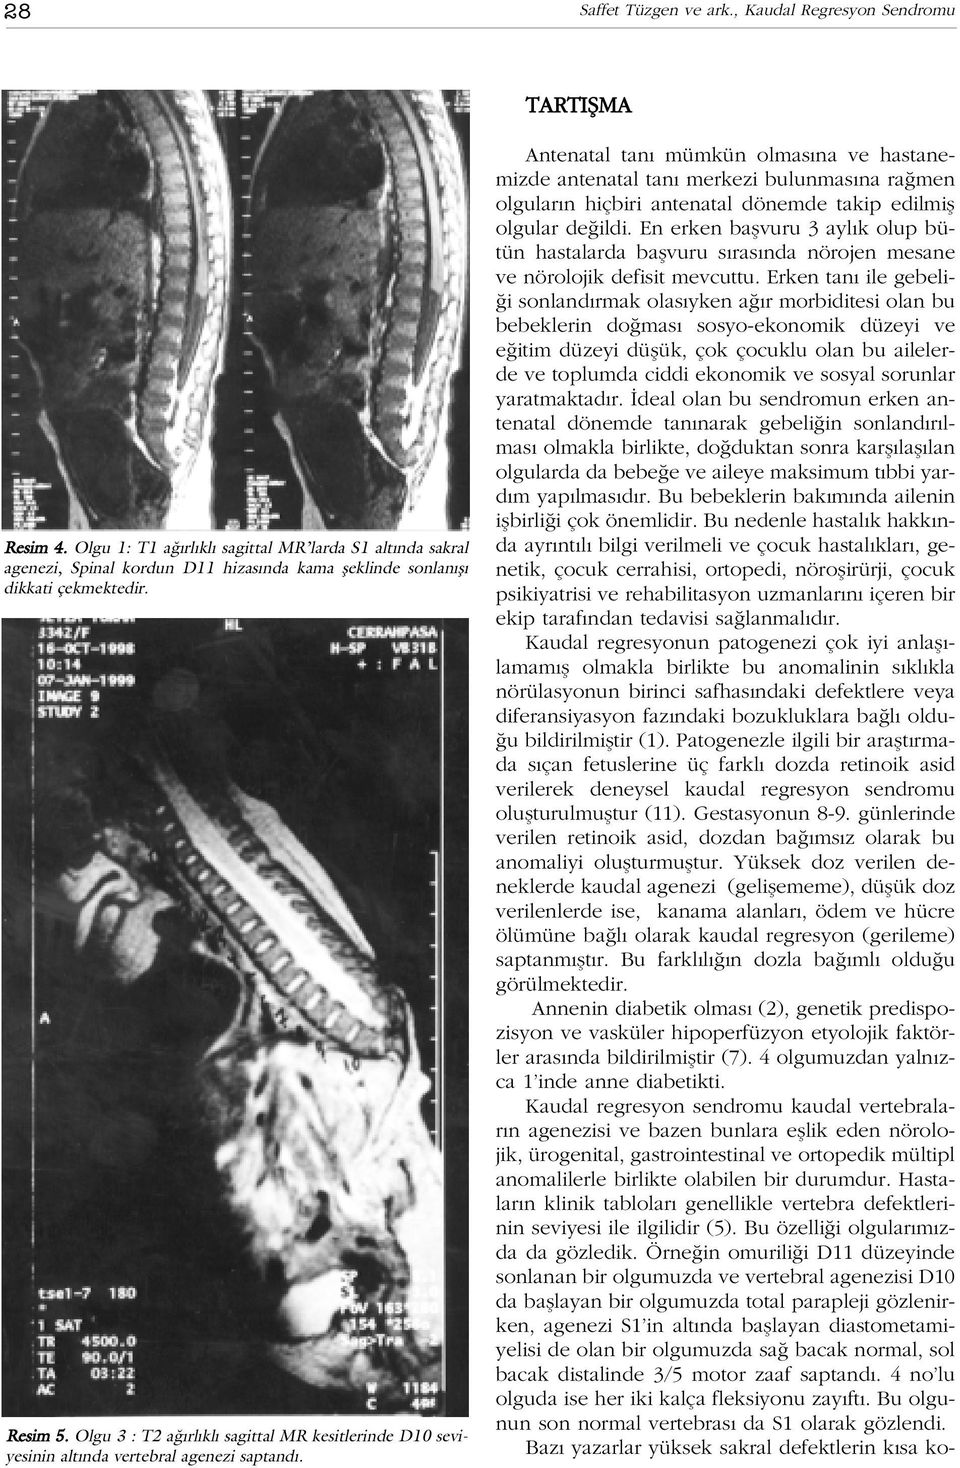 Olgu 3 : T2 a rl kl sagittal MR kesitlerinde D10 seviyesinin alt nda vertebral agenezi saptand.